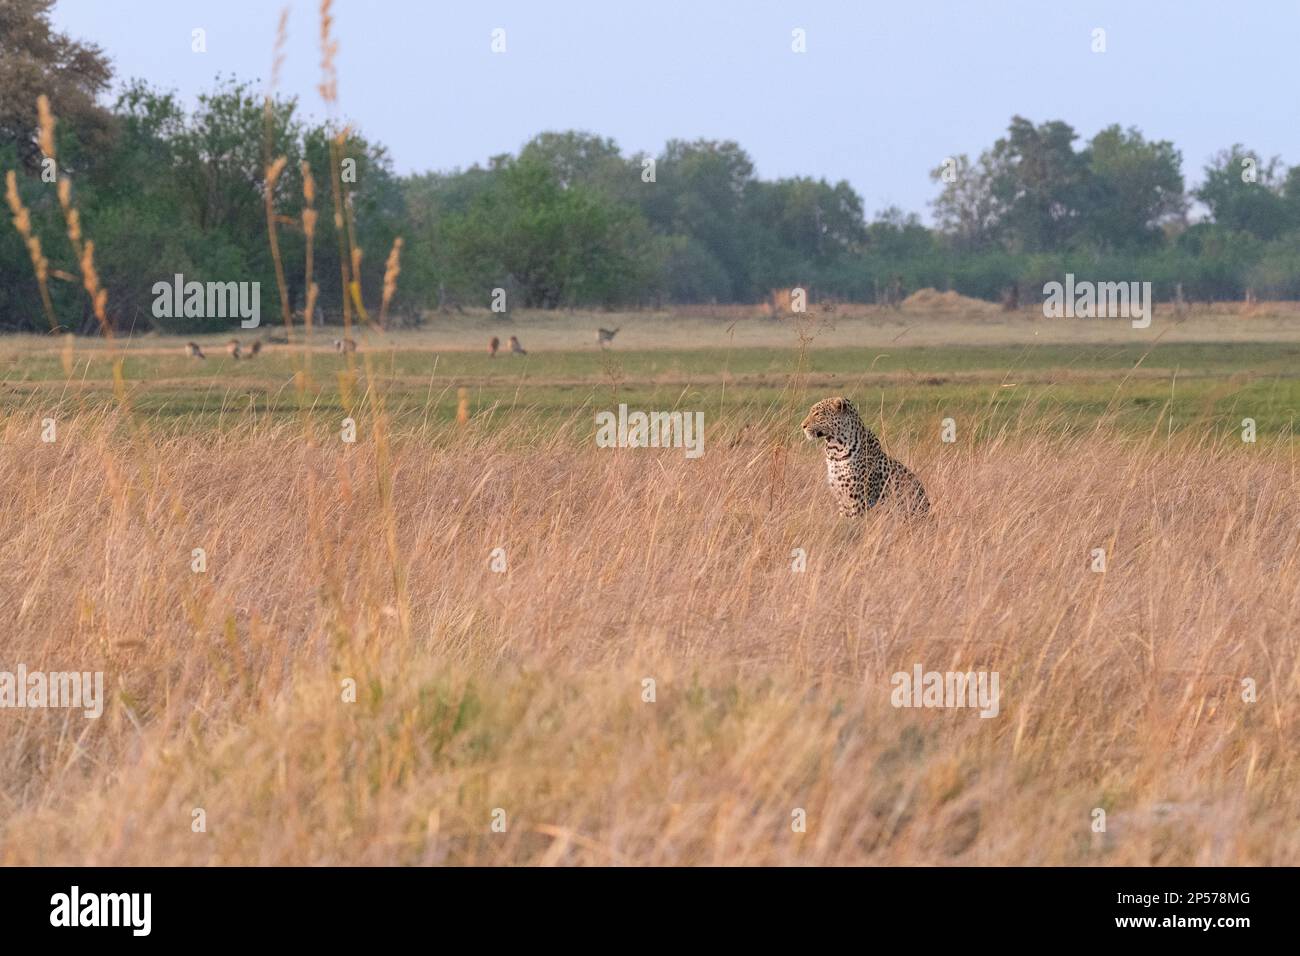 Le léopard (Panthera pardus) se trouve dans l'herbe haute pour observer sa proie. Okavango Delta, Botswana, Afrique Banque D'Images